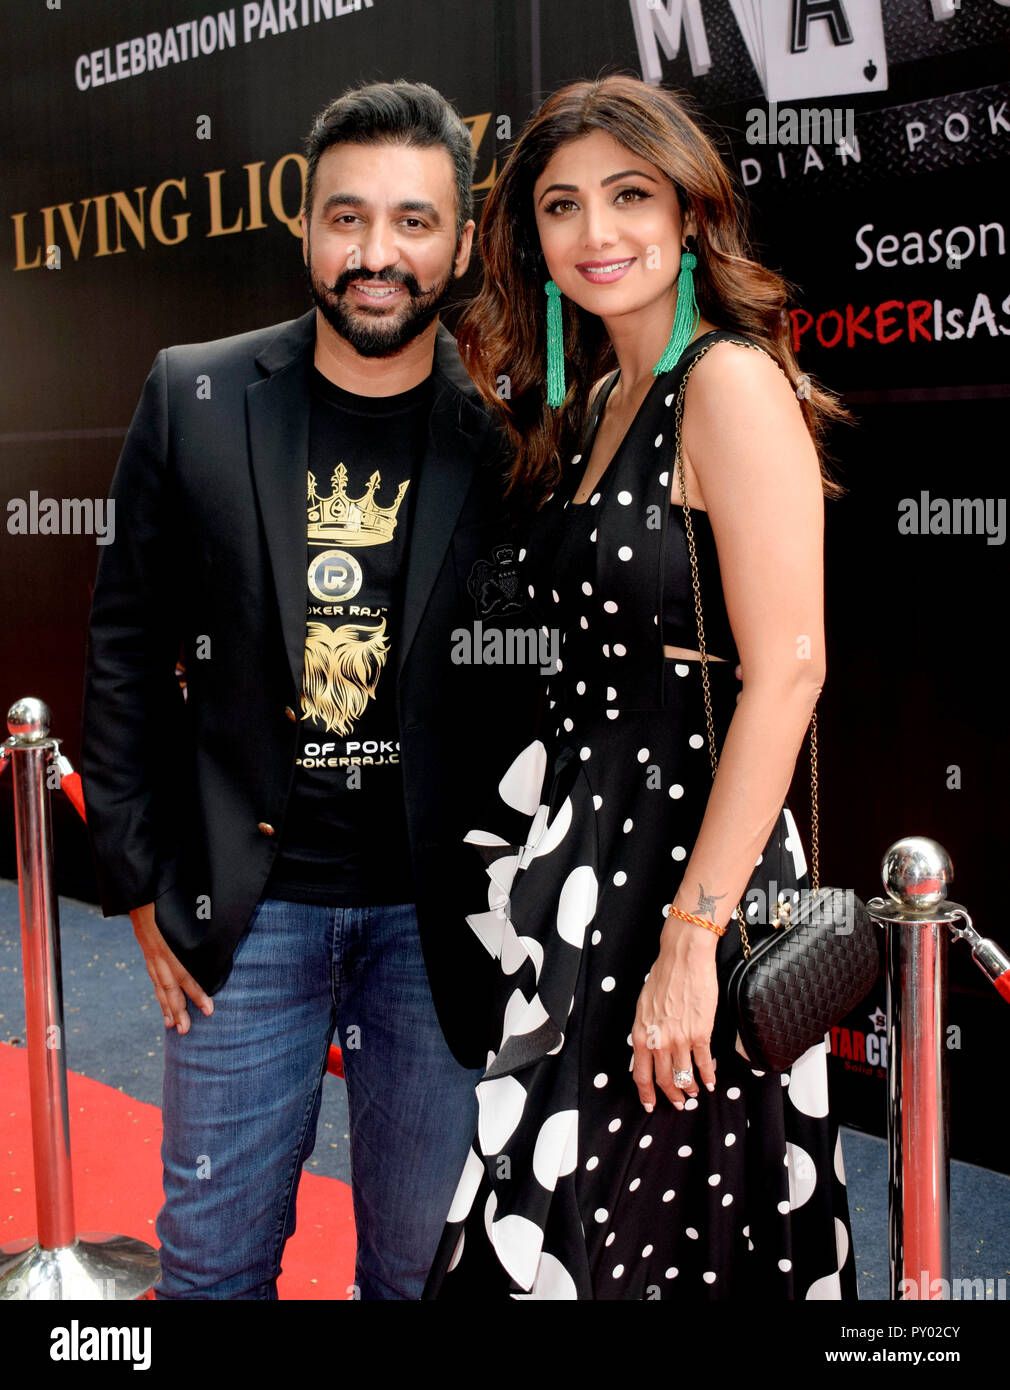 L'actrice indienne Shilpa Shetty film avec mari Raj Kundra poser pour les photos lors de la cérémonie d'ouverture de la saison 3 de la Ligue de Poker indien à Mumbai. Banque D'Images